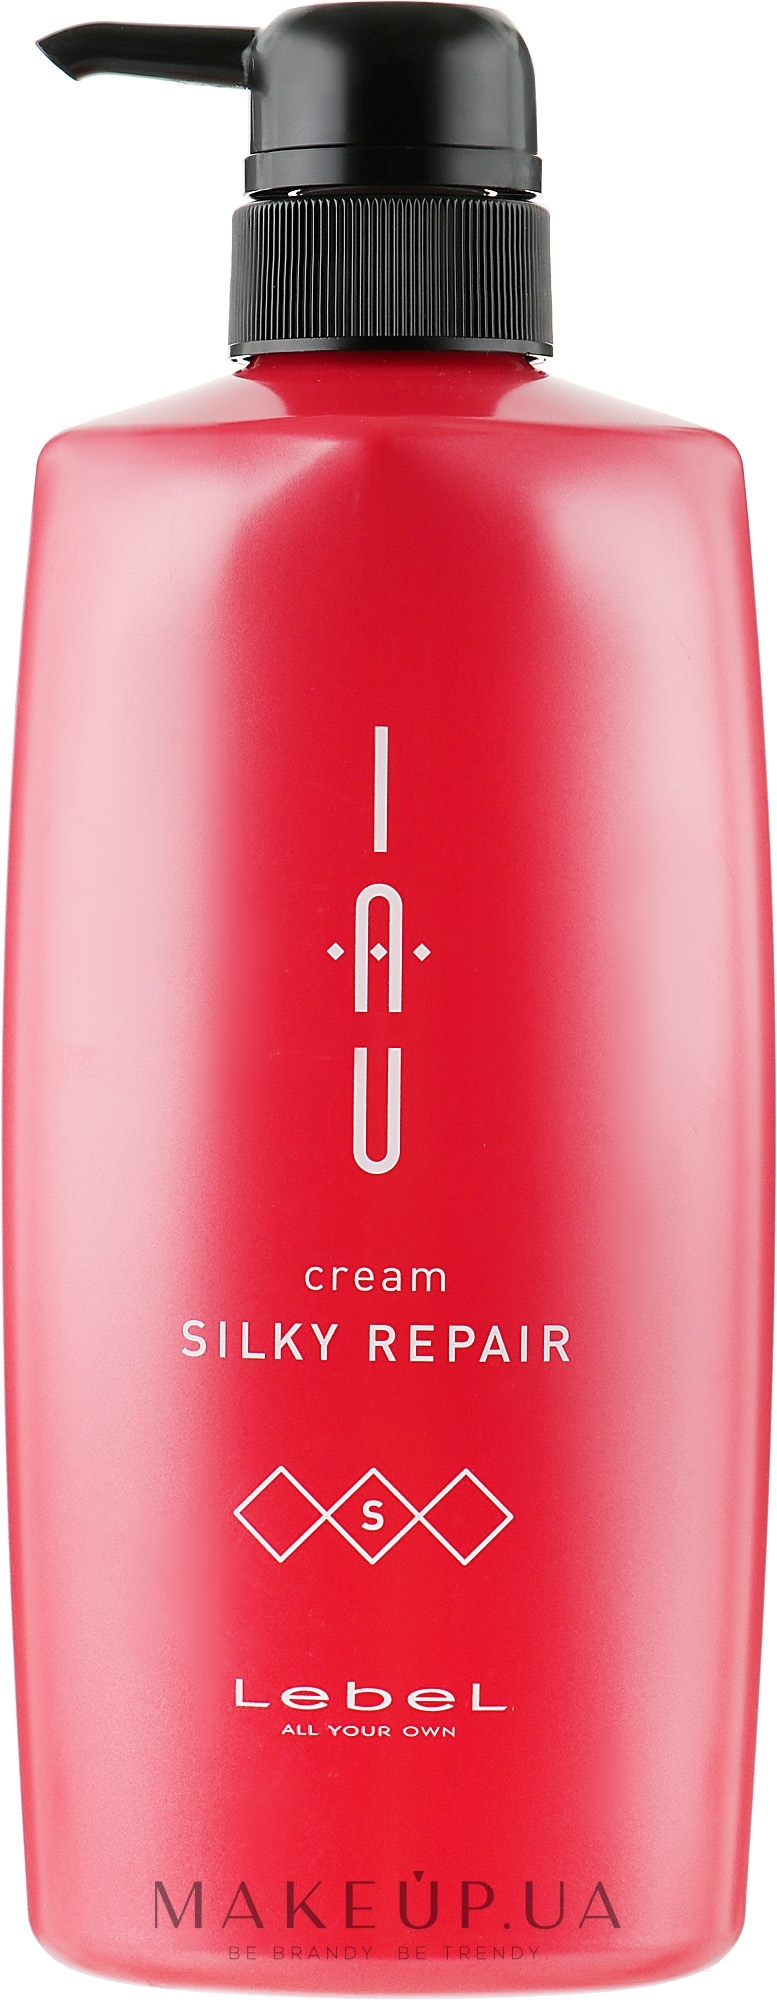 Аромакрем з шовковою консистенцією для зміцнення волосся - Lebel IAU Cream Silky Repair — фото 600ml